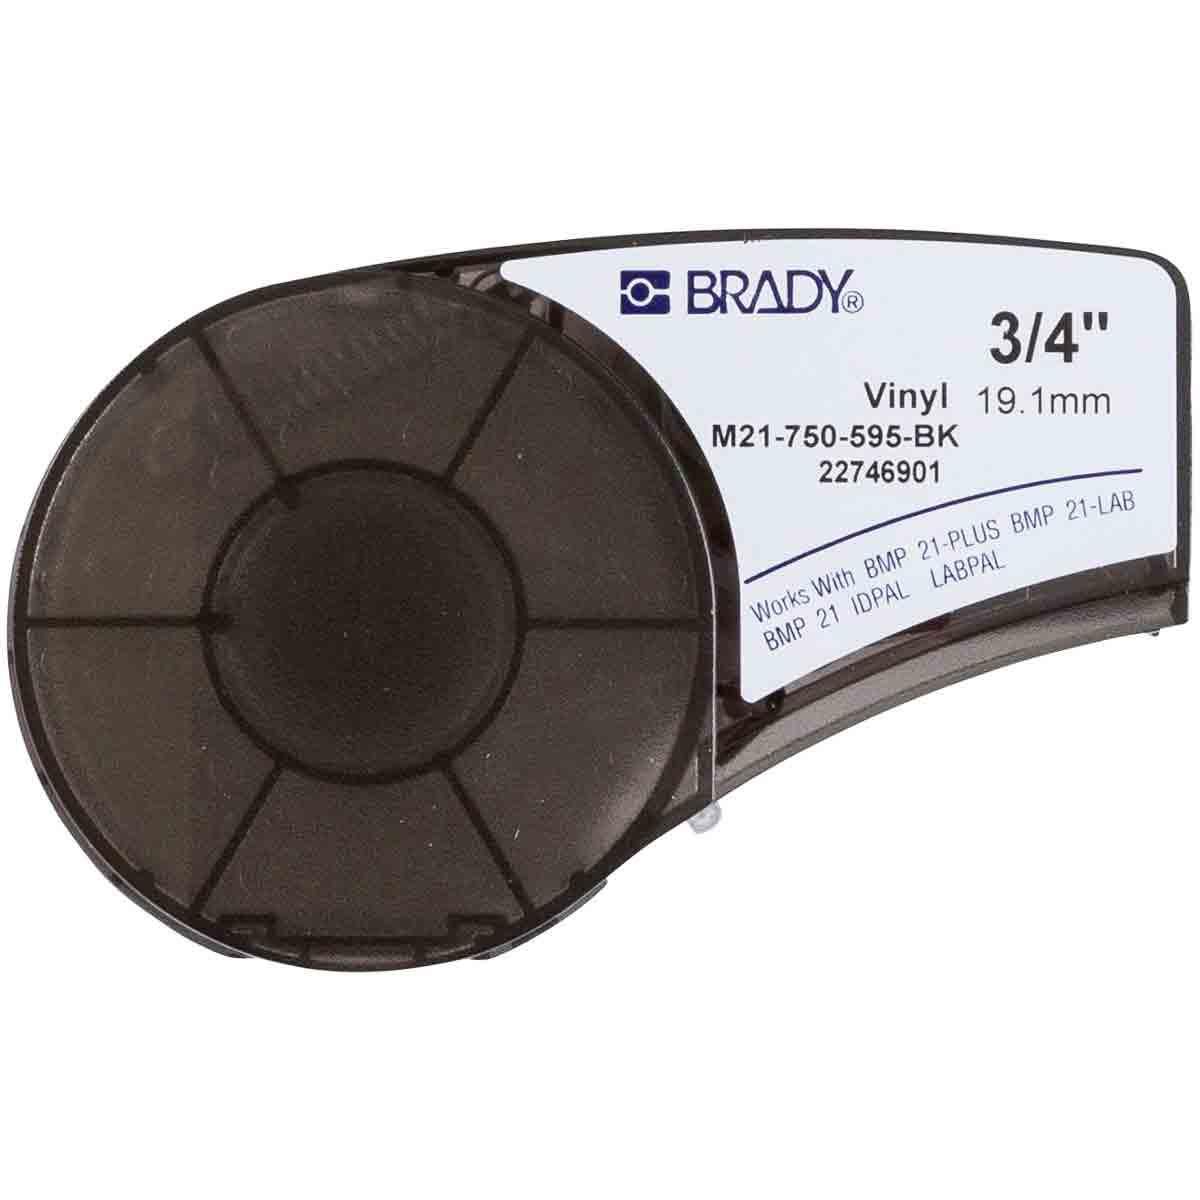 Brady M21-750-595-BK White on Black Vinyl tape for 